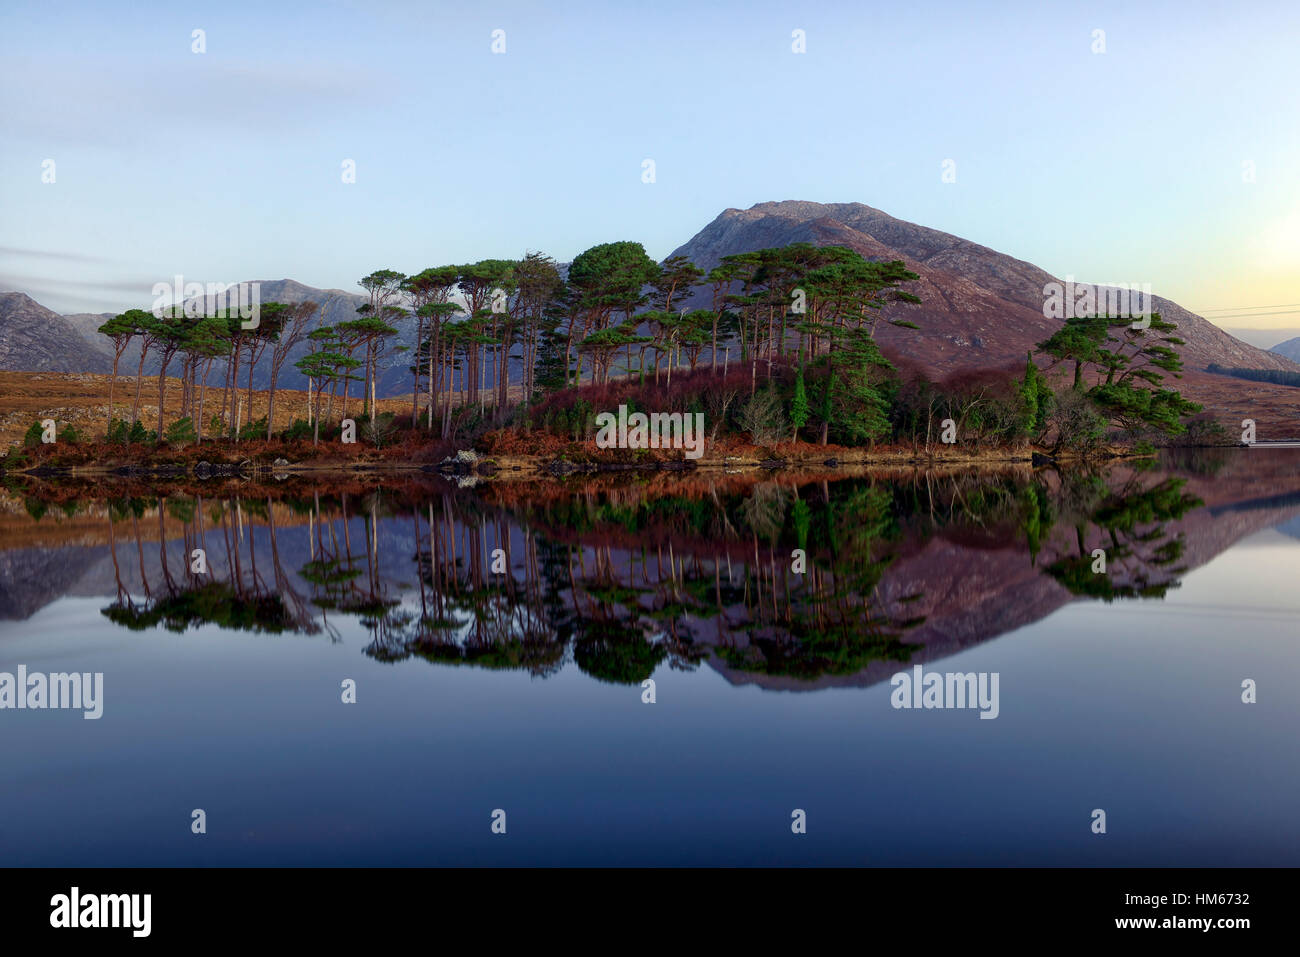 Derryclare Lough lake pin des montagnes du Connemara l'île sauvage de l'Atlantique route de l'ouest de l'Irlande reflètent toujours calme reflet miroir Banque D'Images